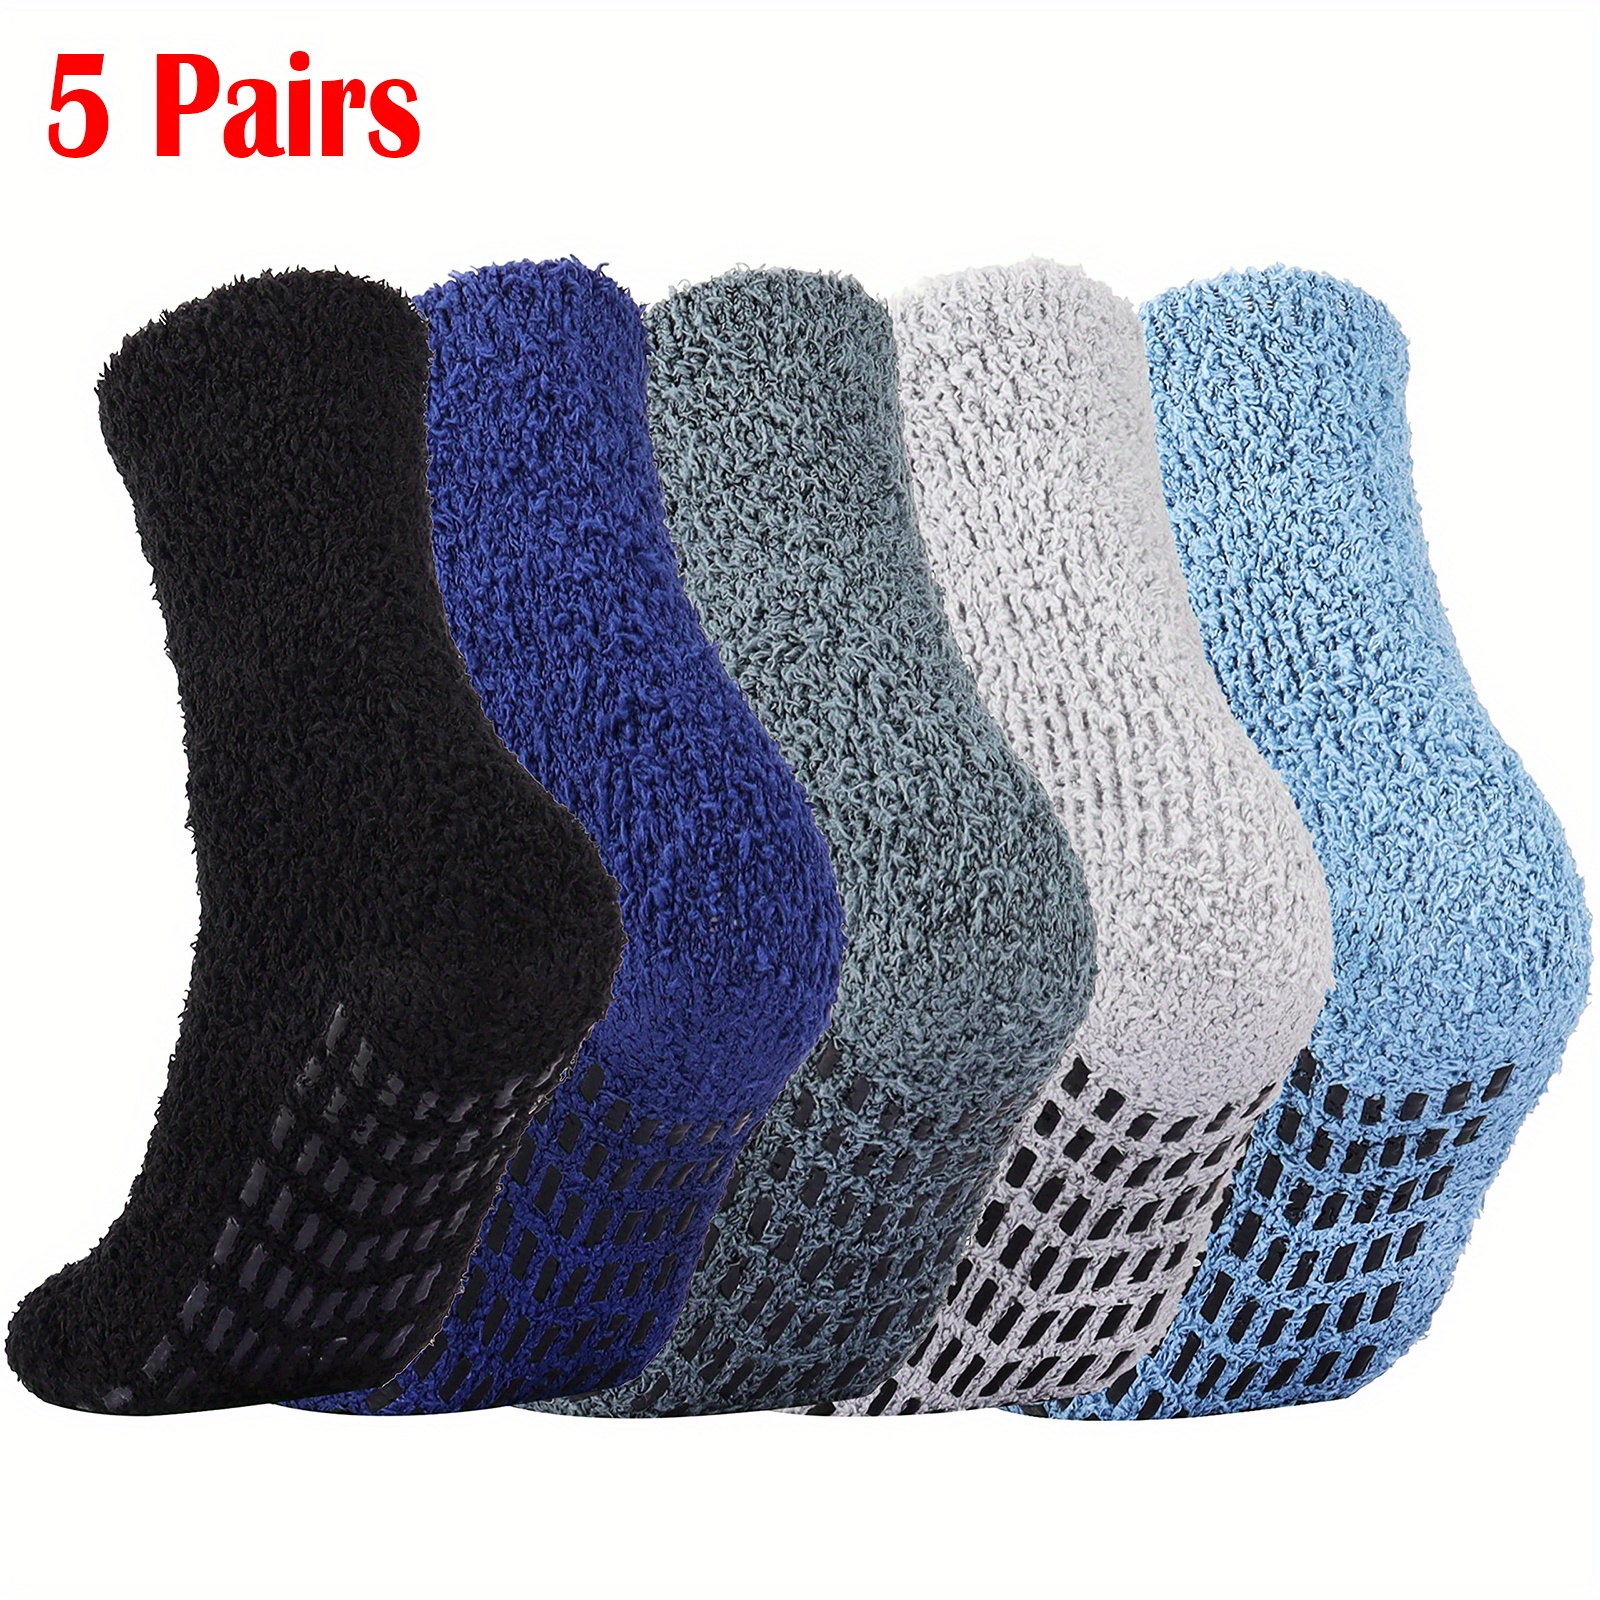 Pembrook Slipper Socks for Women with Grippers Non Slip - Hospital